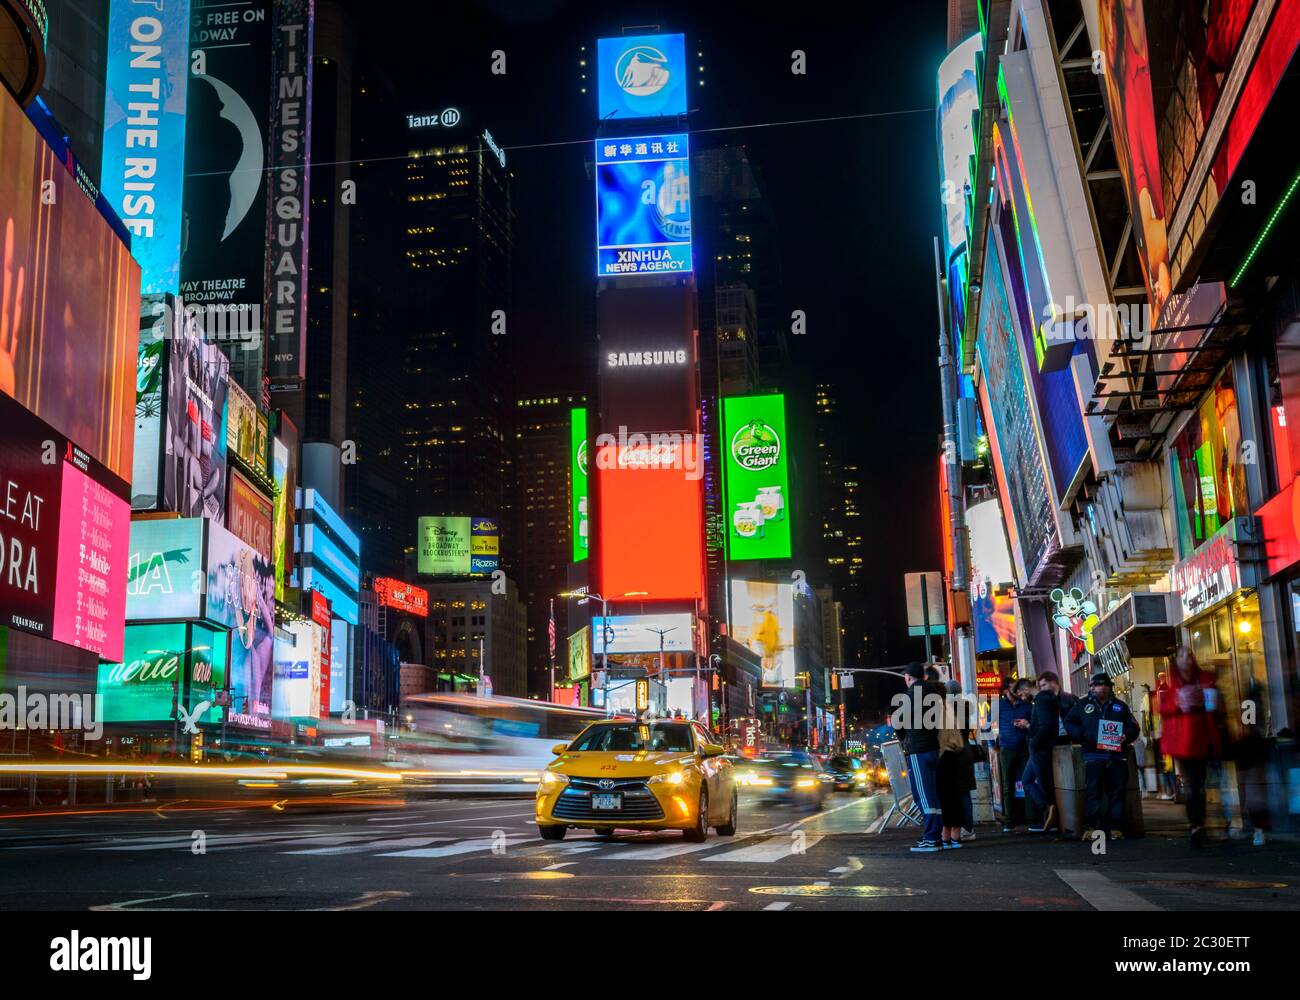 Typisches gelbes Taxi im Verkehr, Times Square bei Nacht, Midtown Manhattan, New York City, New York State, USA Stockfoto